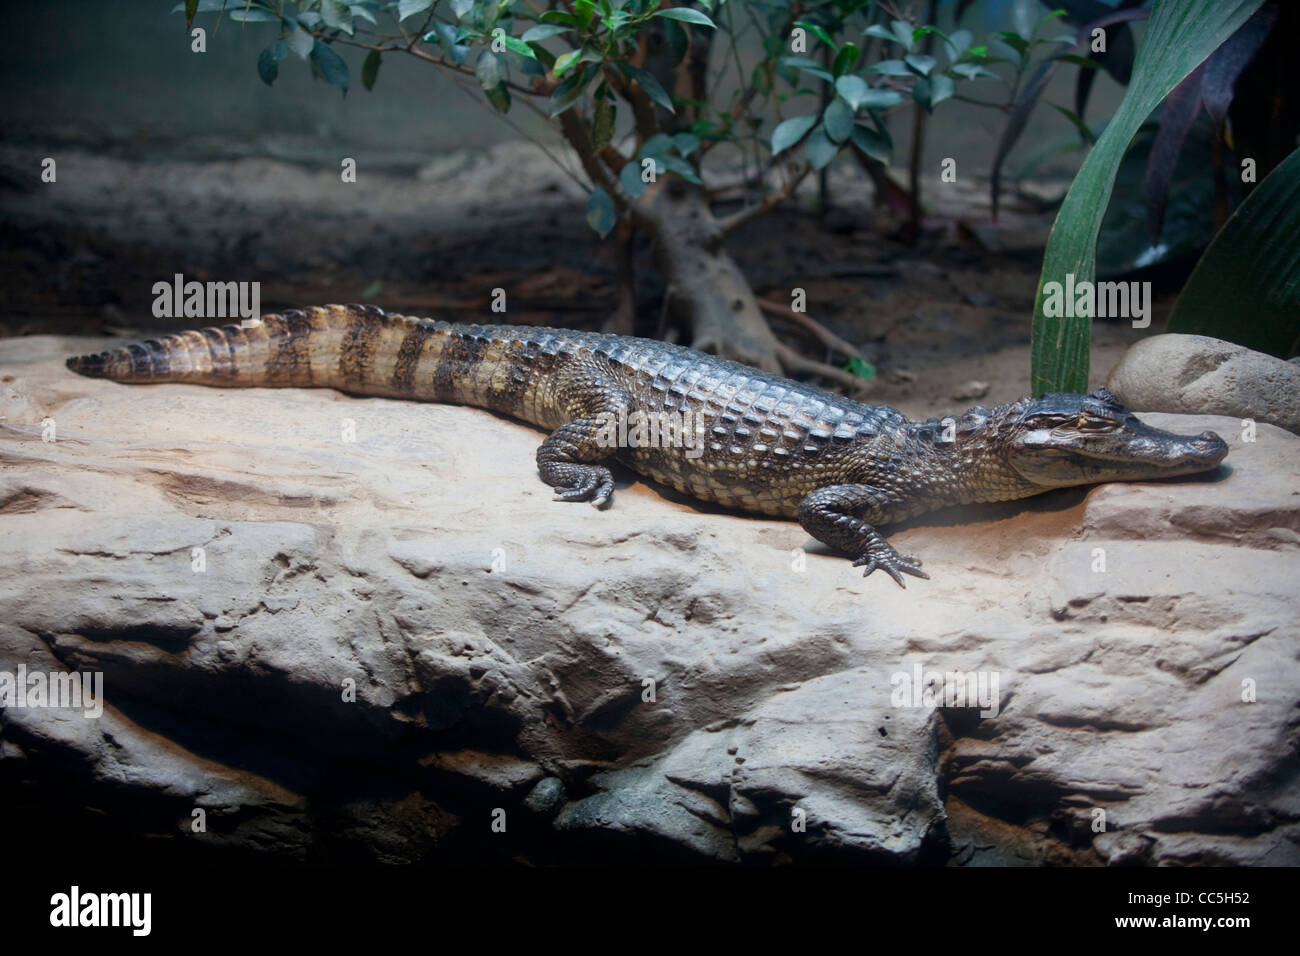 Chinese Alligator, Beijing Zoo, China Stock Photo